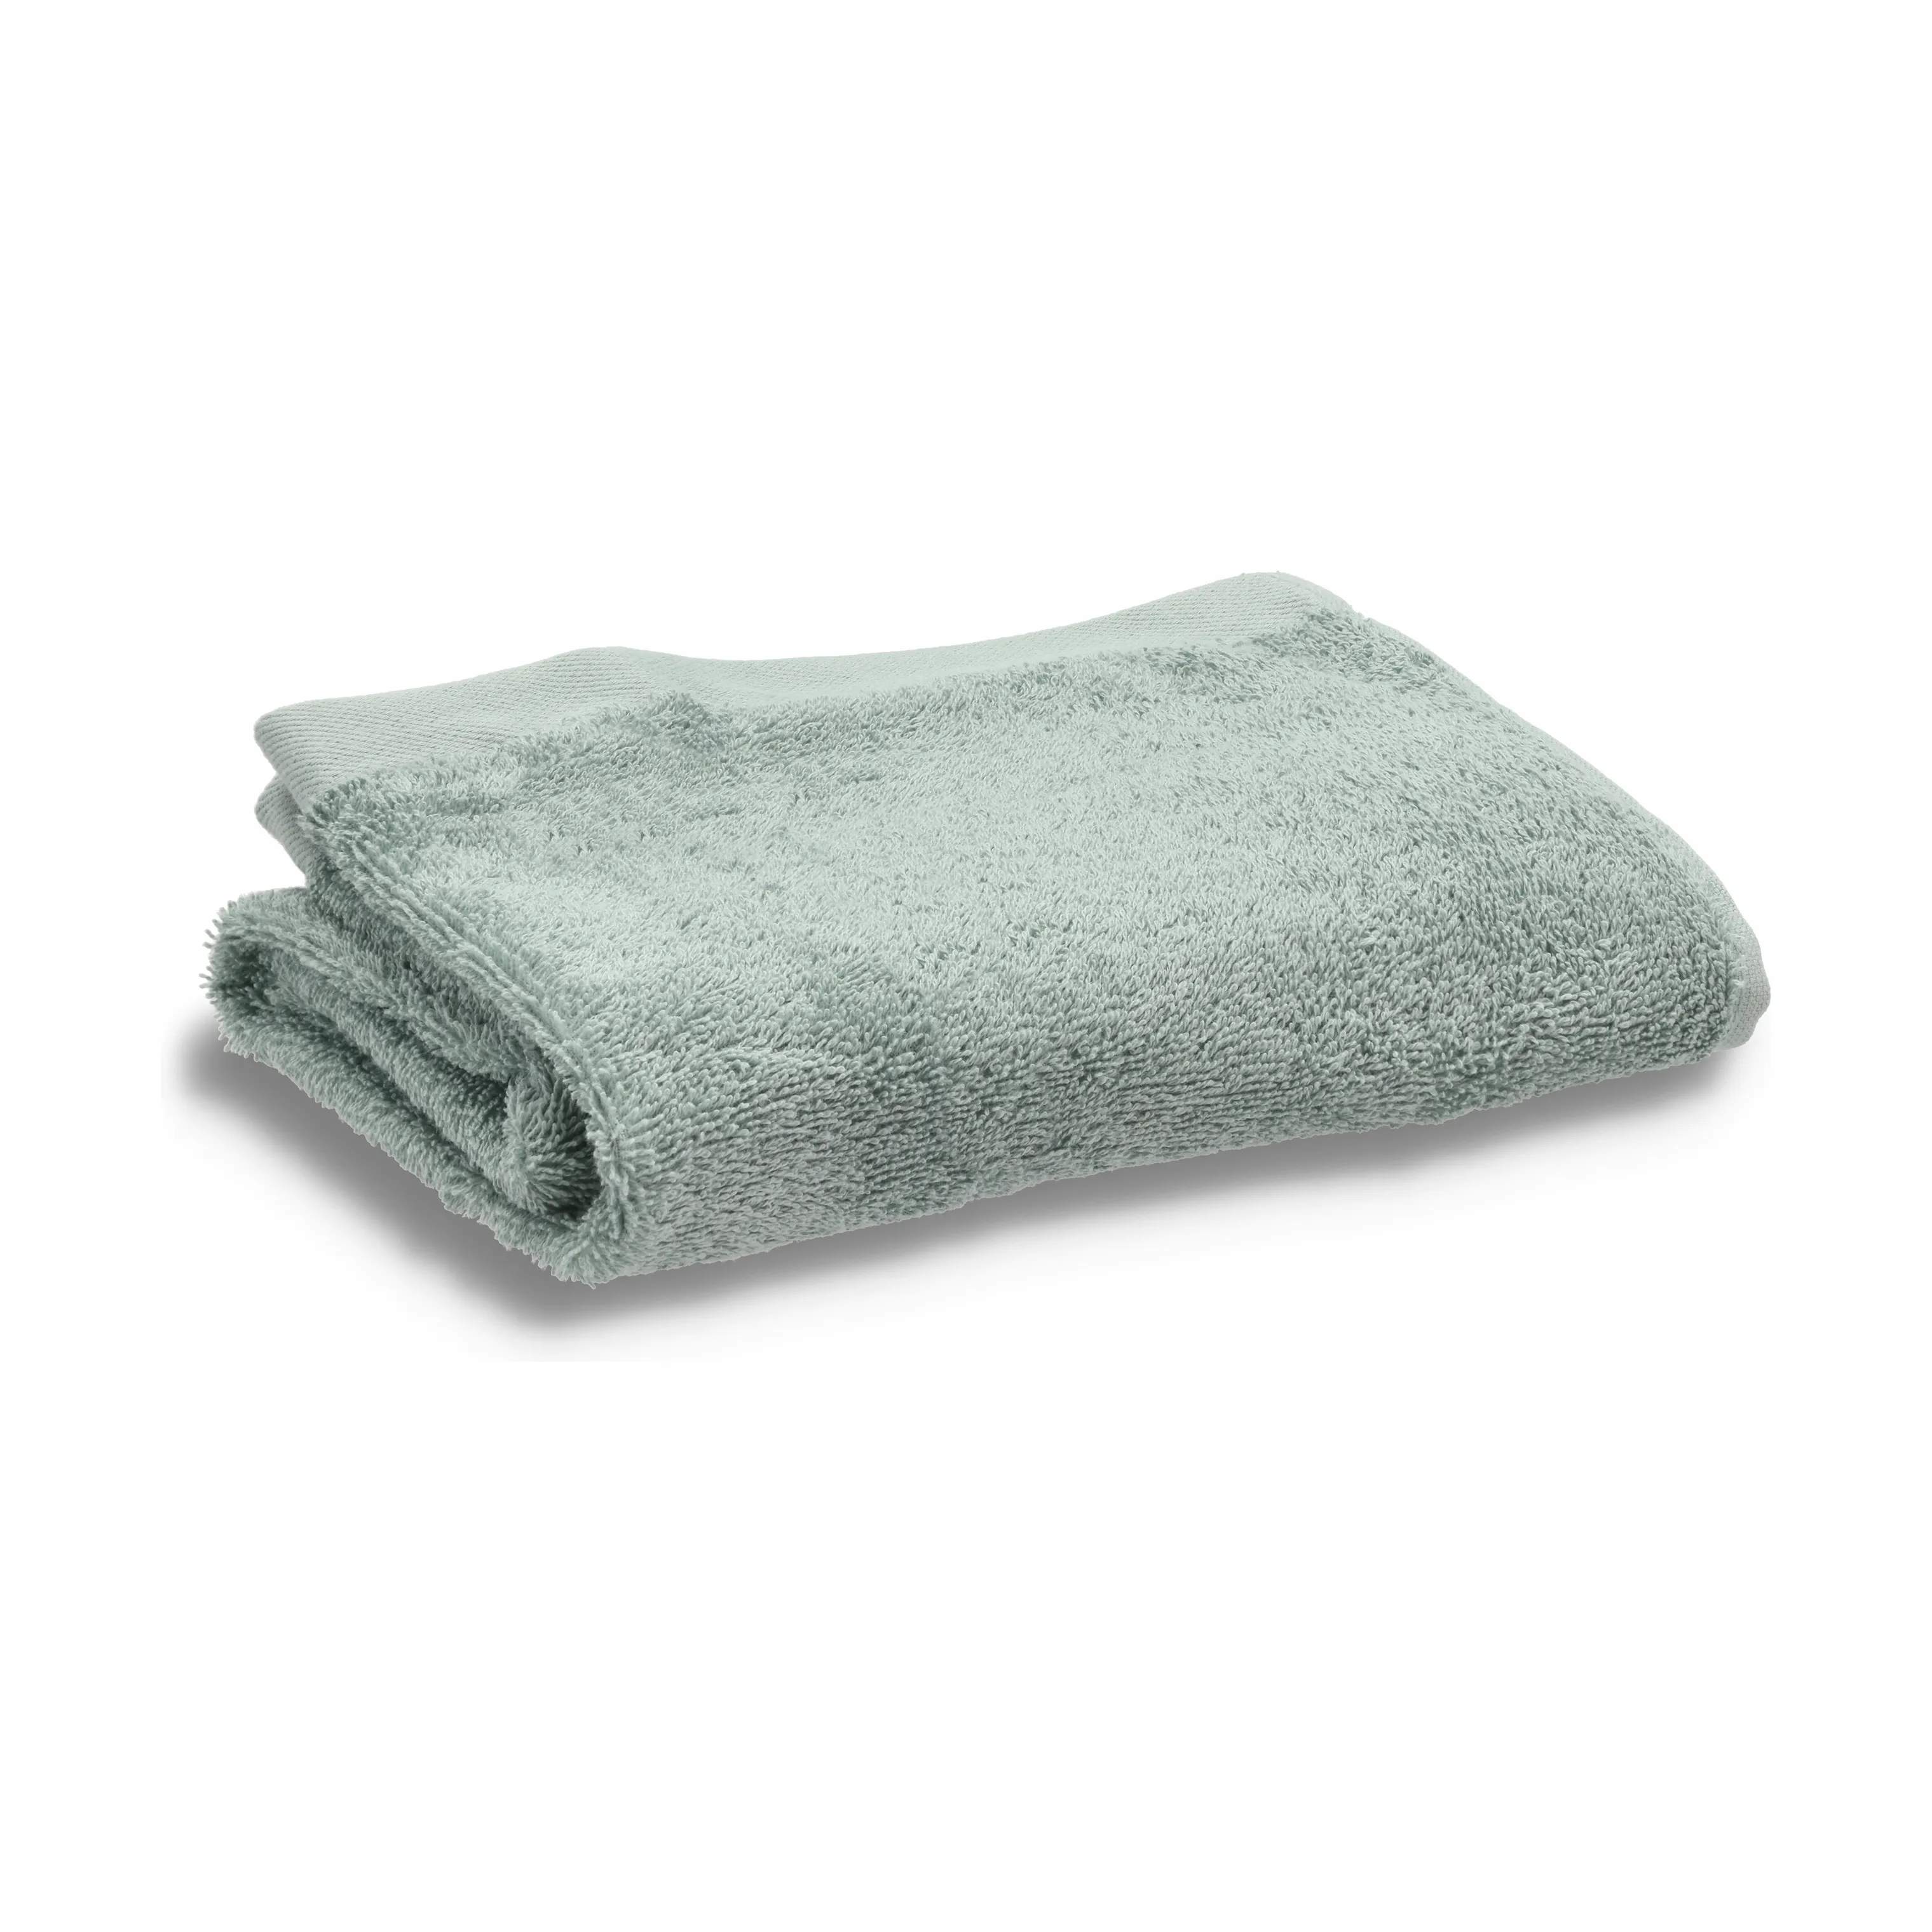 Organic Comfort Håndklæde, teal, large